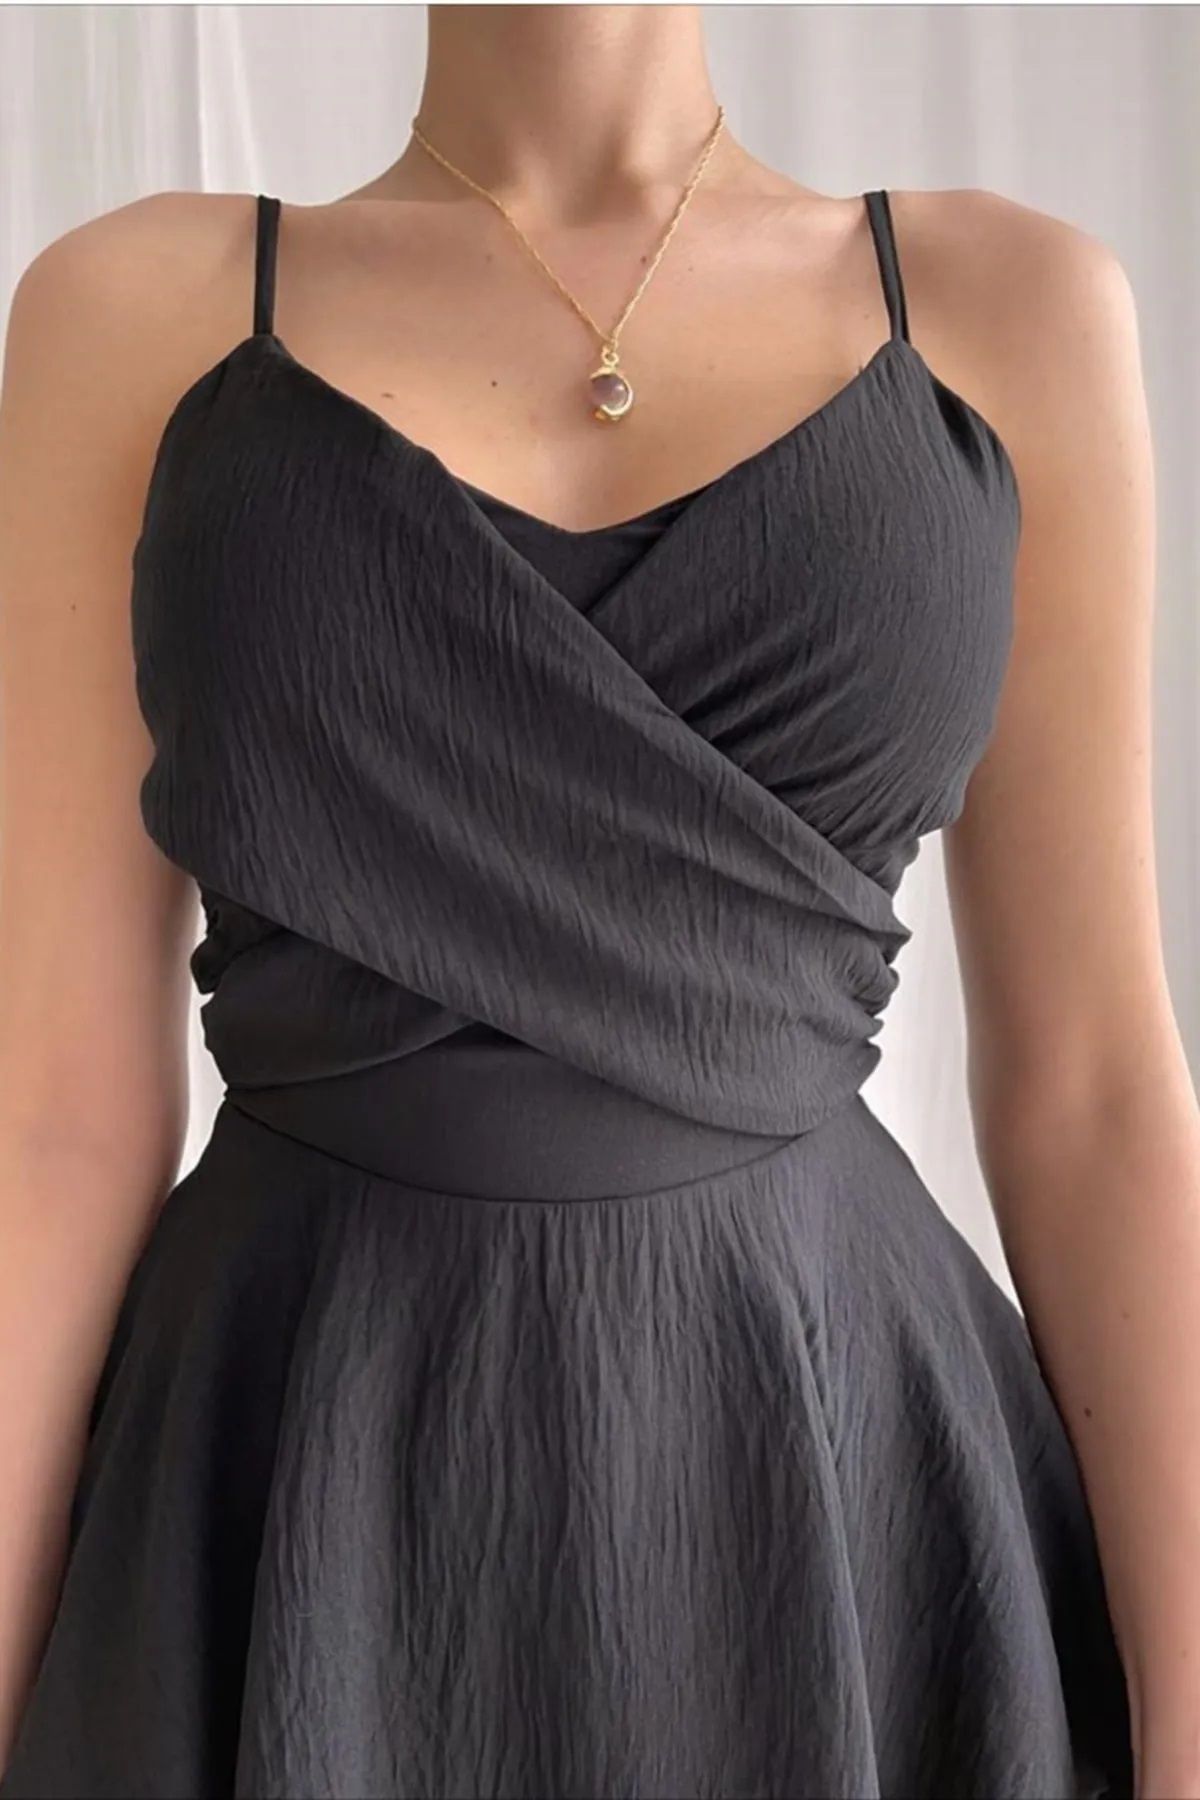 WOMAN VISION Kadın Aerobin Kumaş Askılı Göğüs Dekolteli Kısa Şortlu Siyah Tulum Elbisesi 125